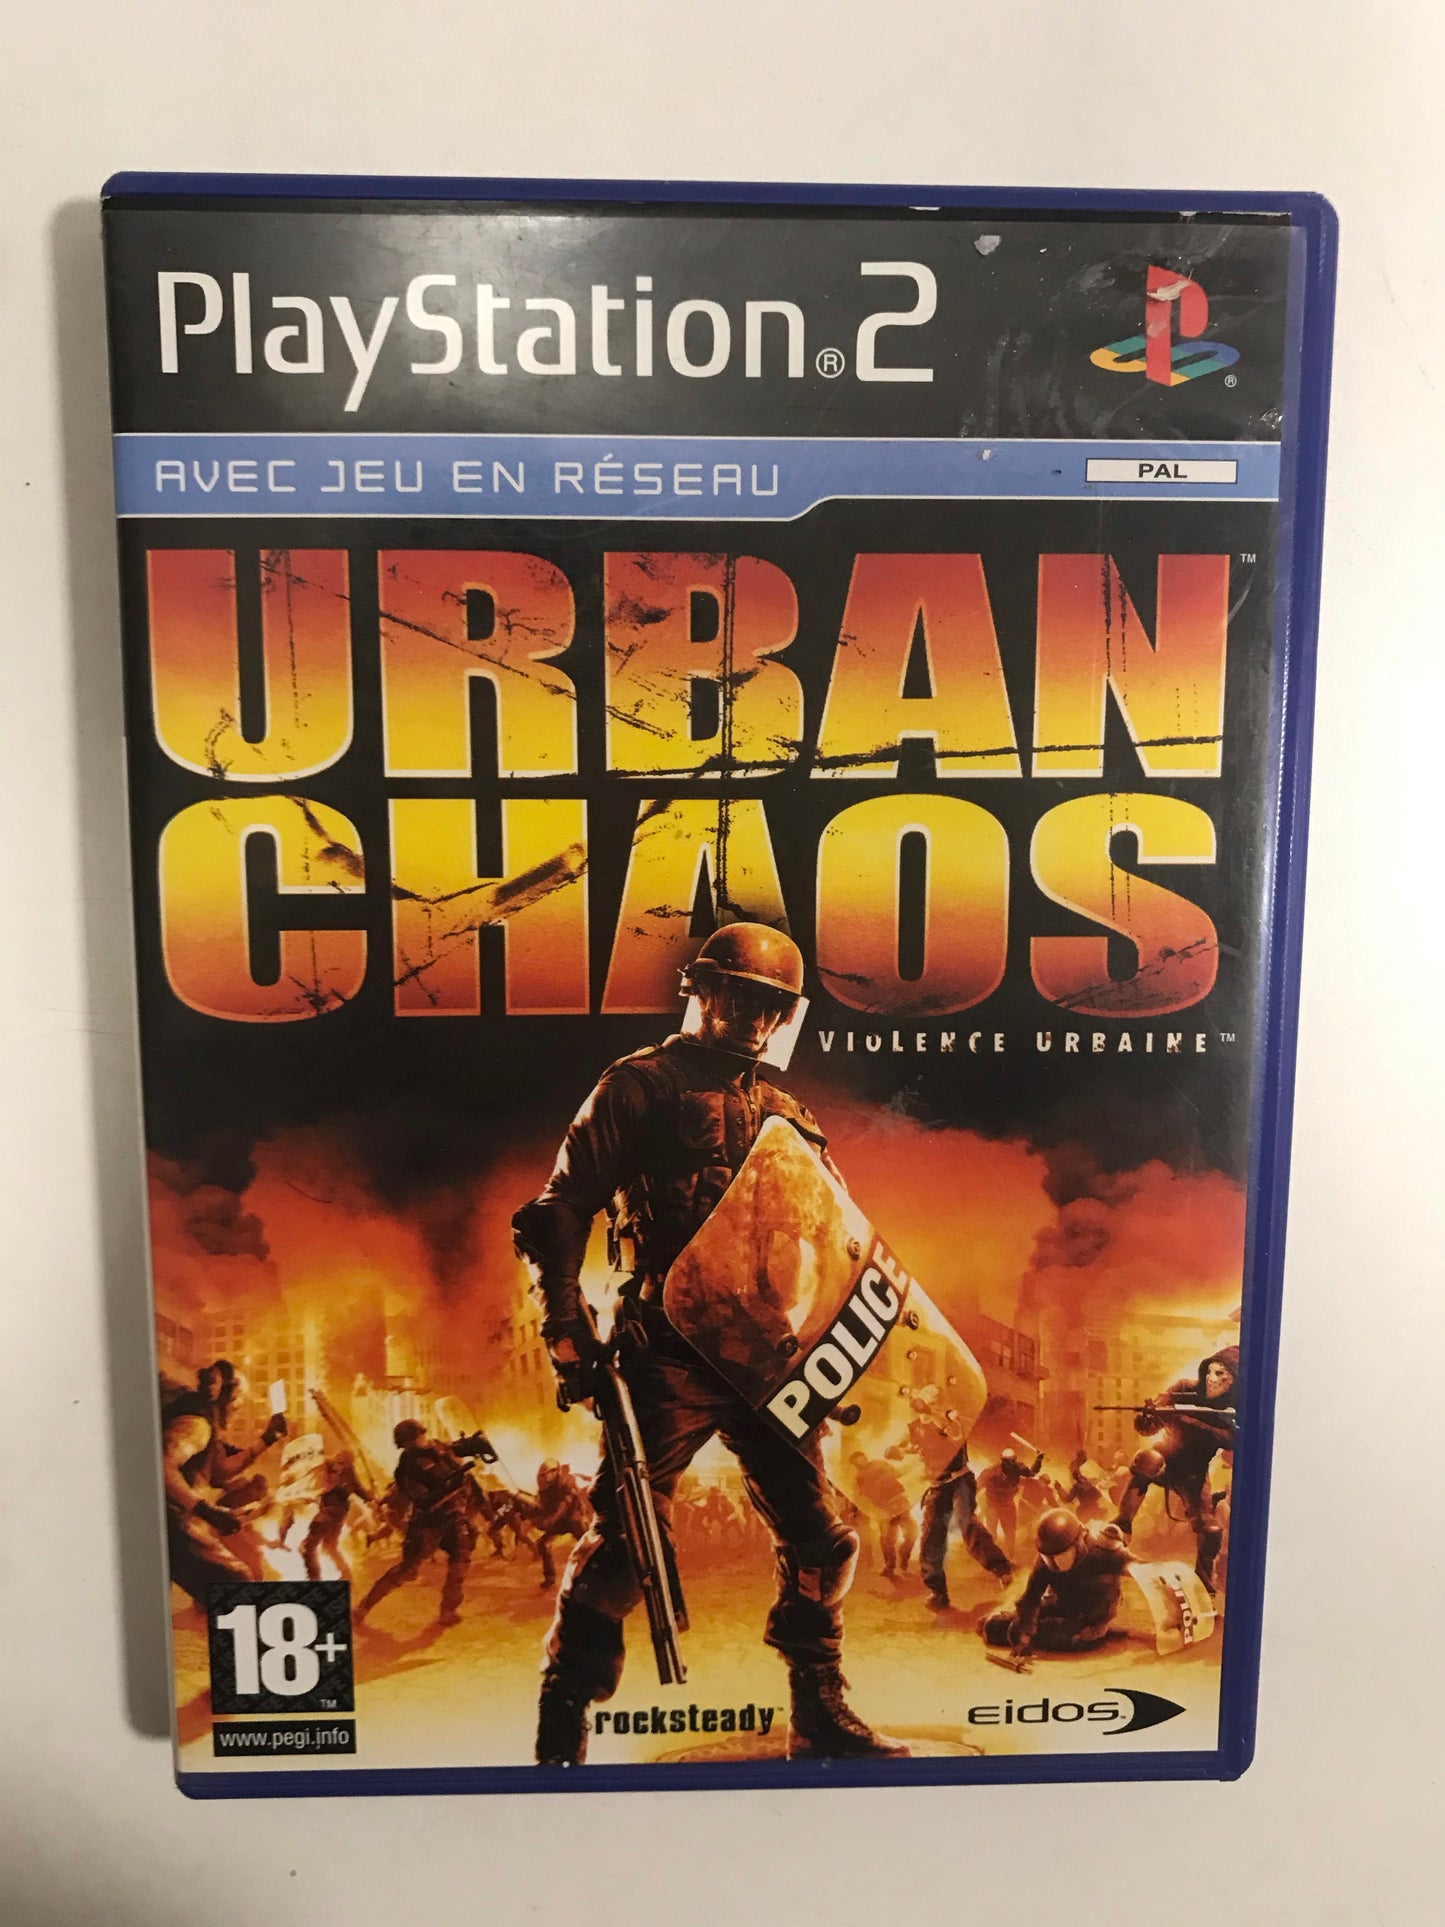 Urban chaos PAL Sony PS2 avec notice